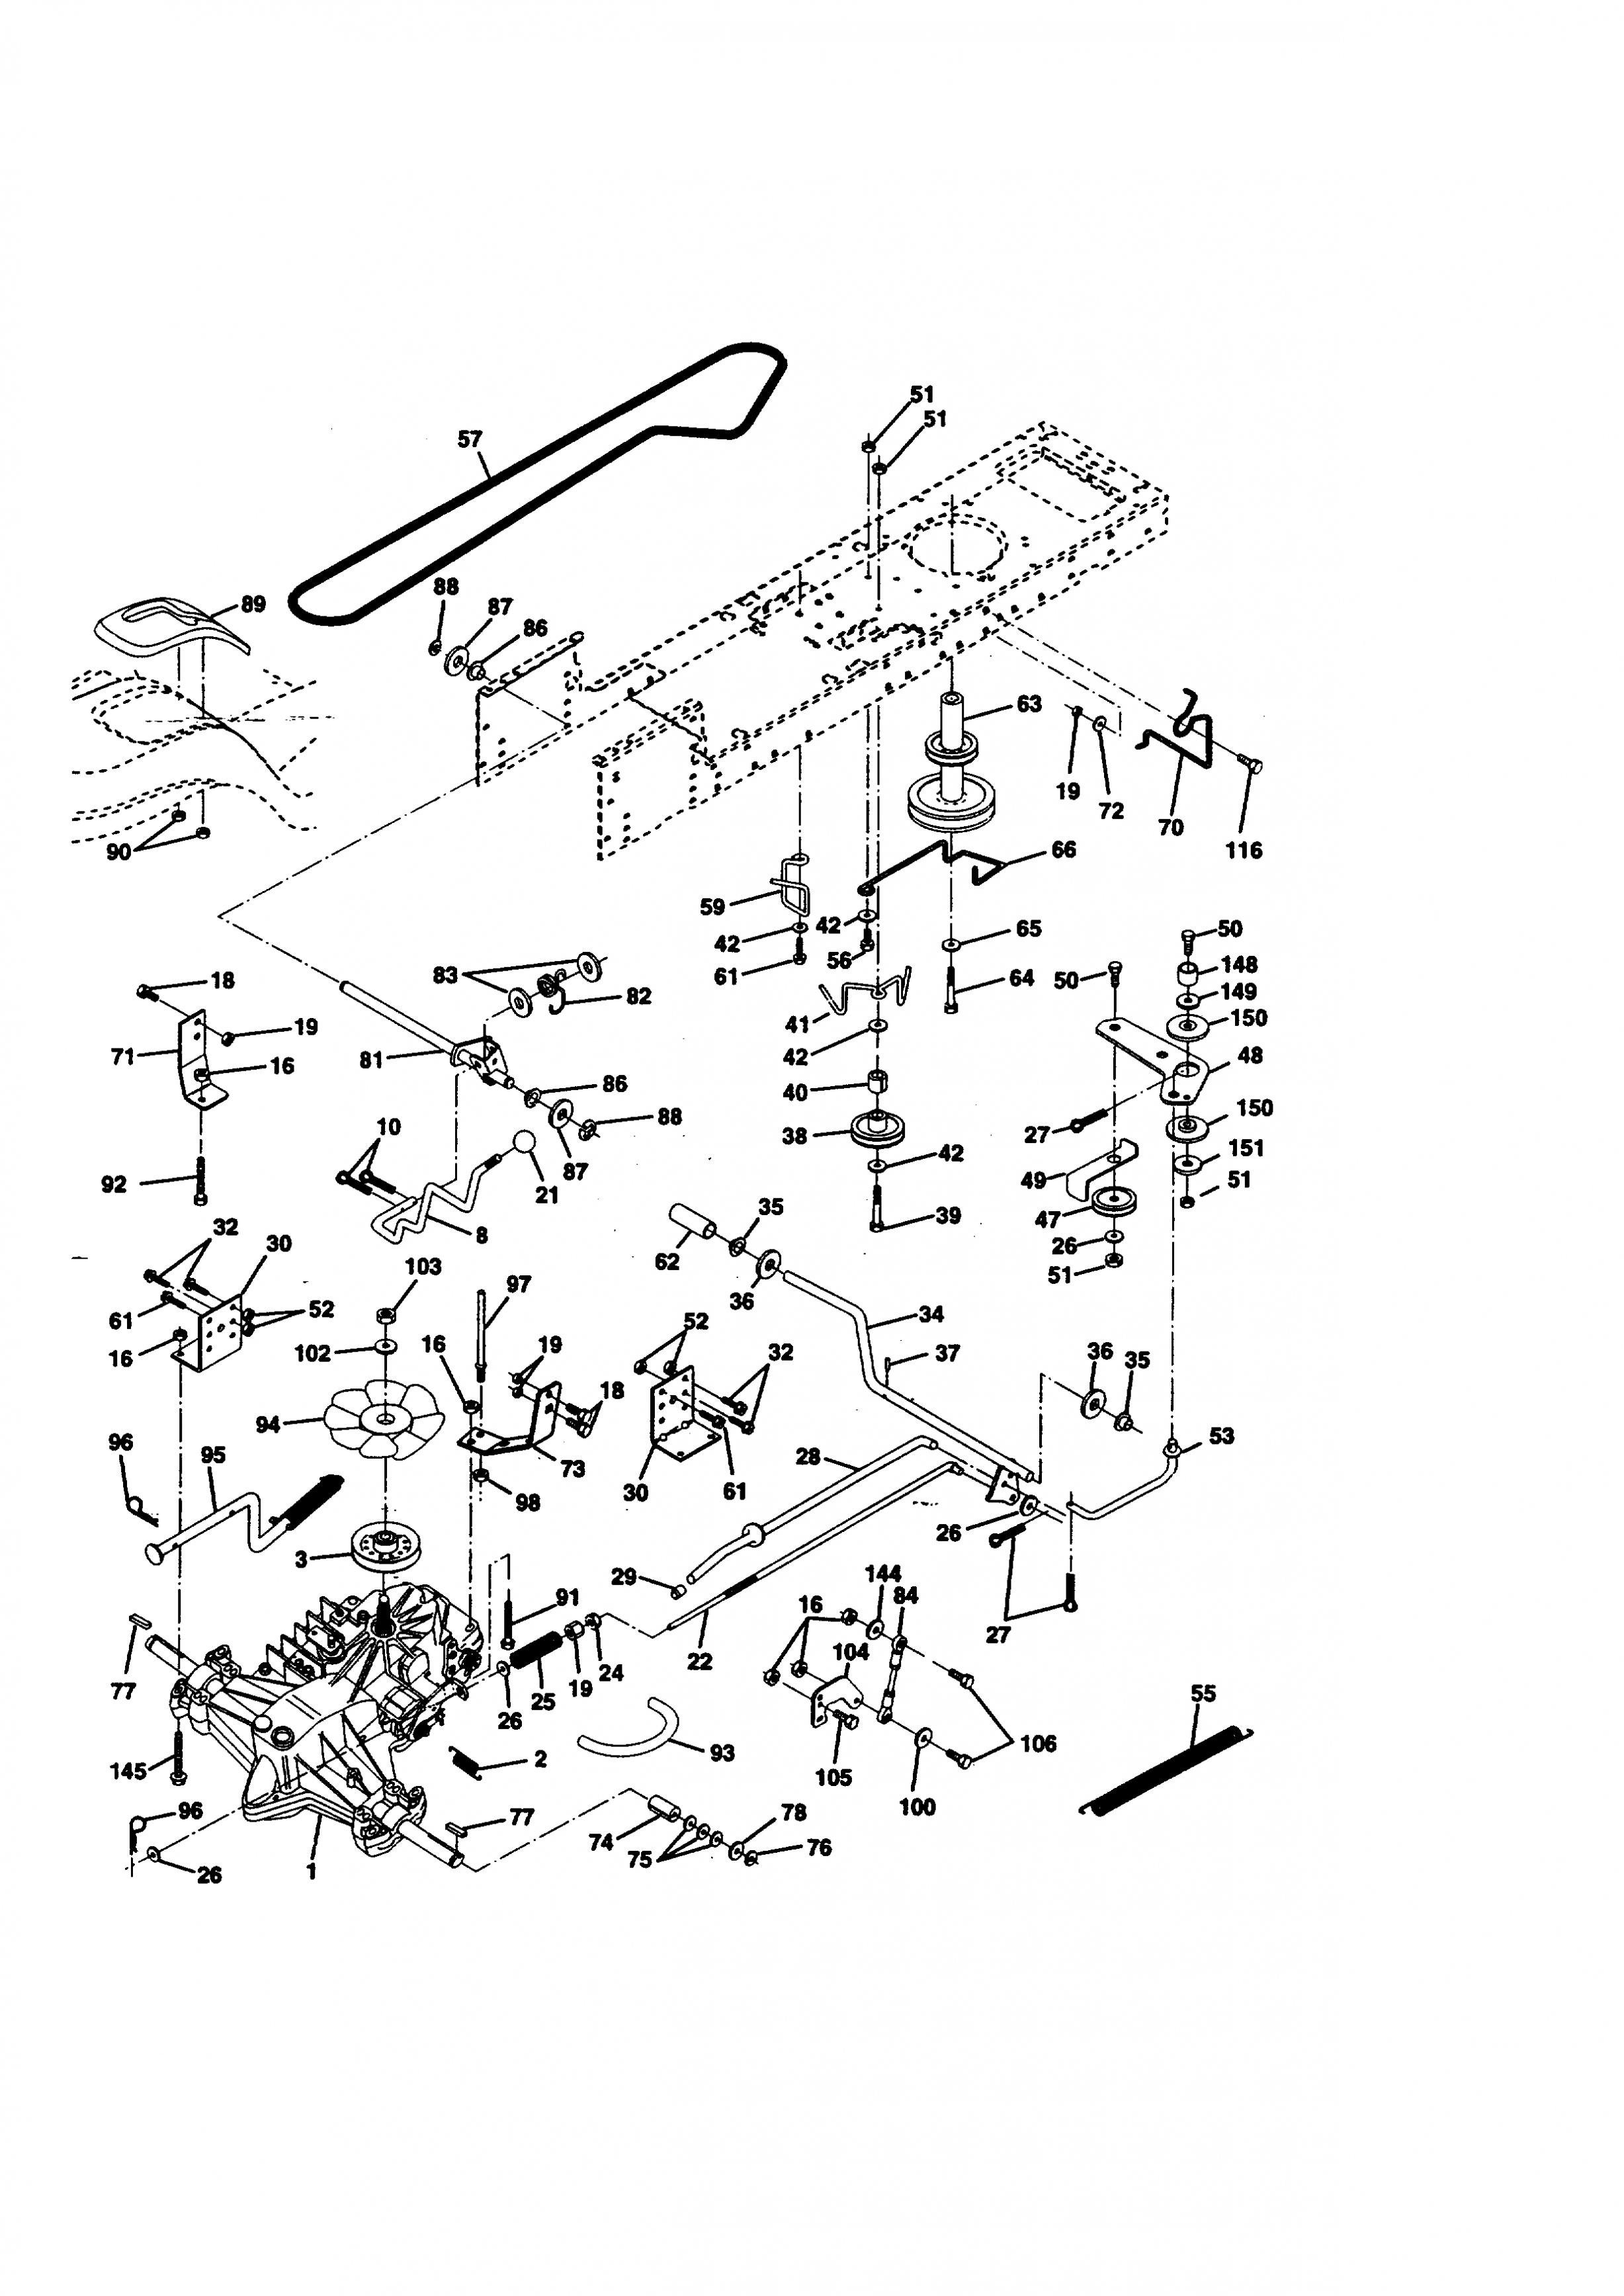 Craftsman Model 917 Wiring Diagram | Wiring Diagram - Craftsman Model 917 Wiring Diagram